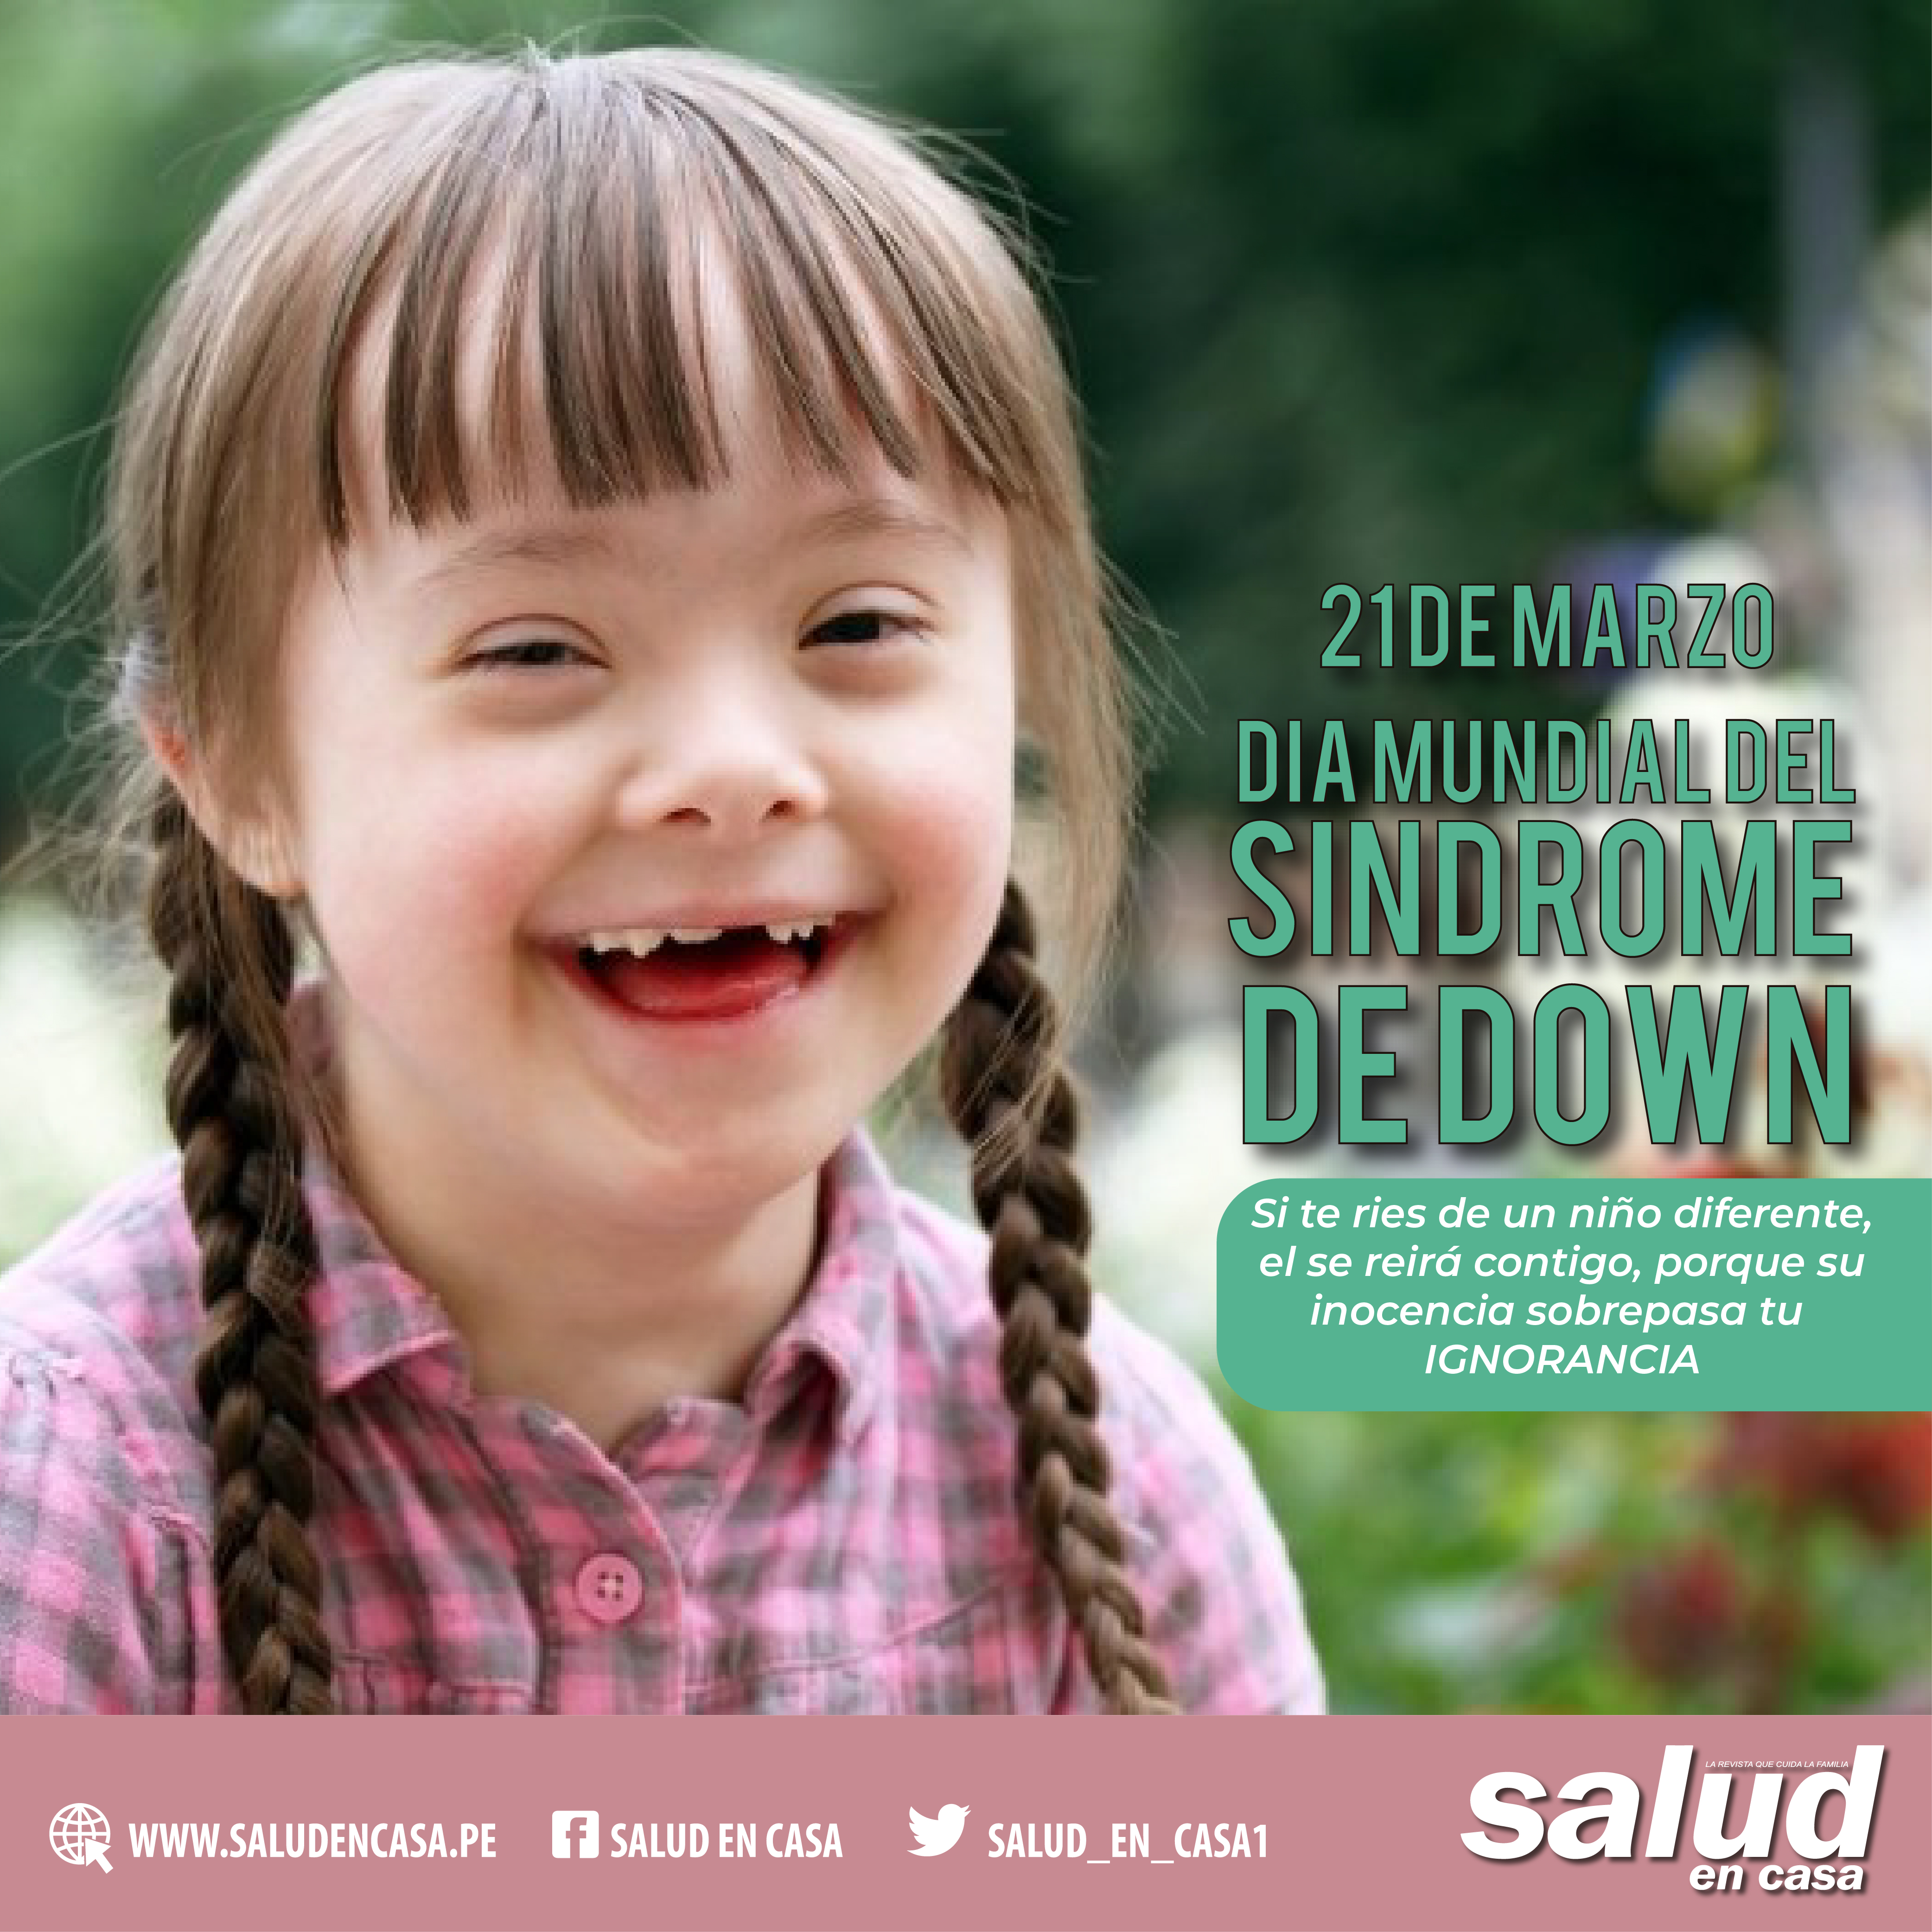 Niños con Síndrome de Down son tan capaces como cualquier otro, no estigmatizarlos